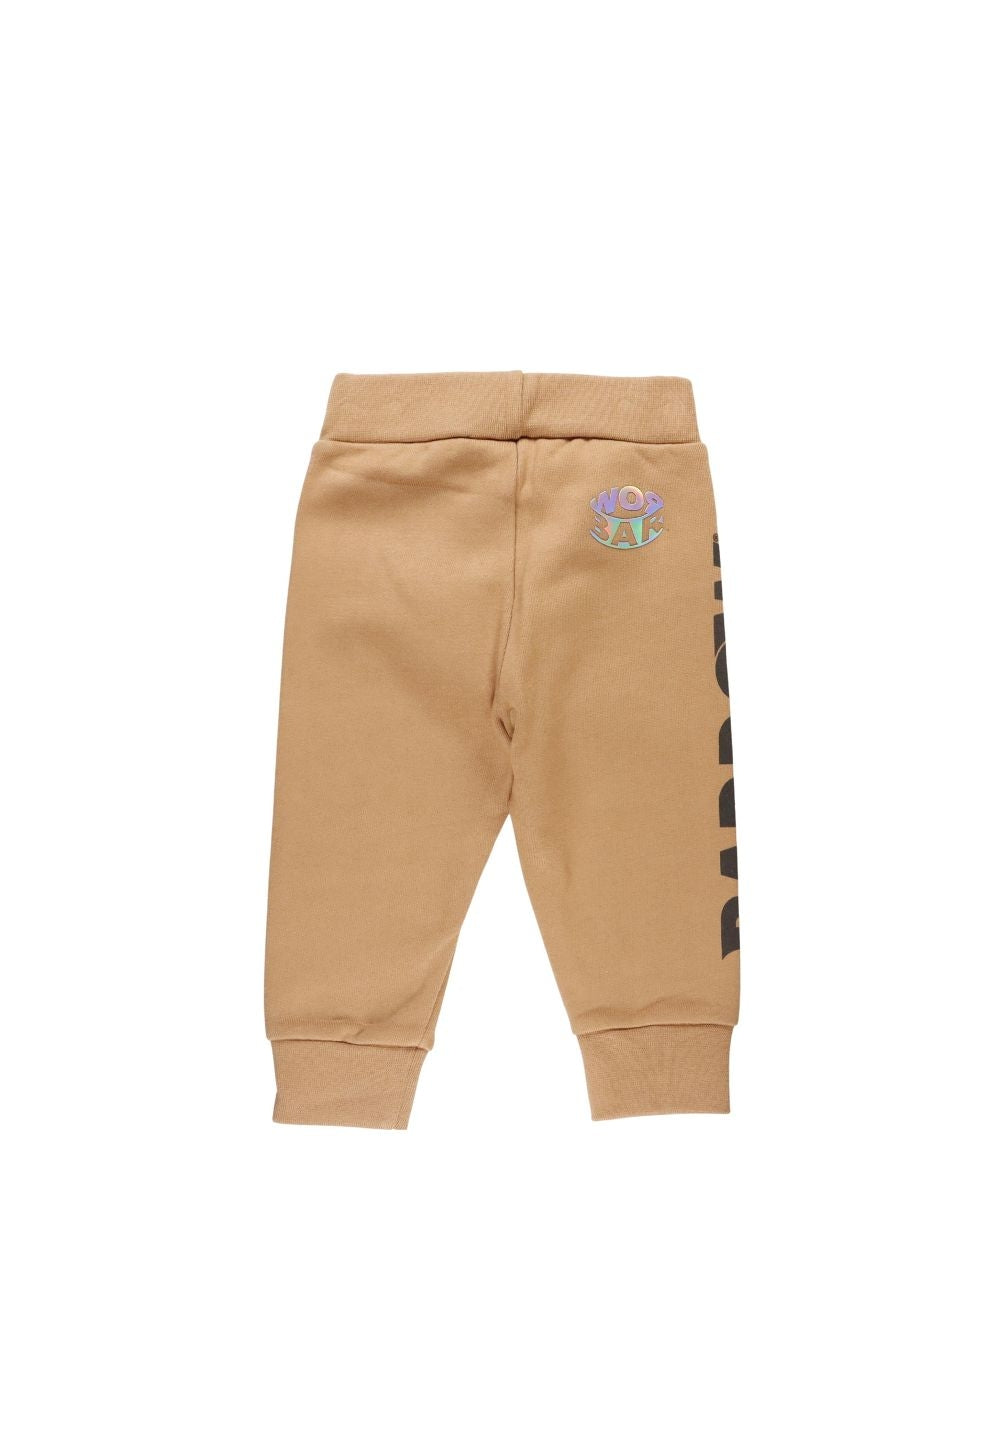 Pantalone felpa marrone per neonato - Primamoda kids